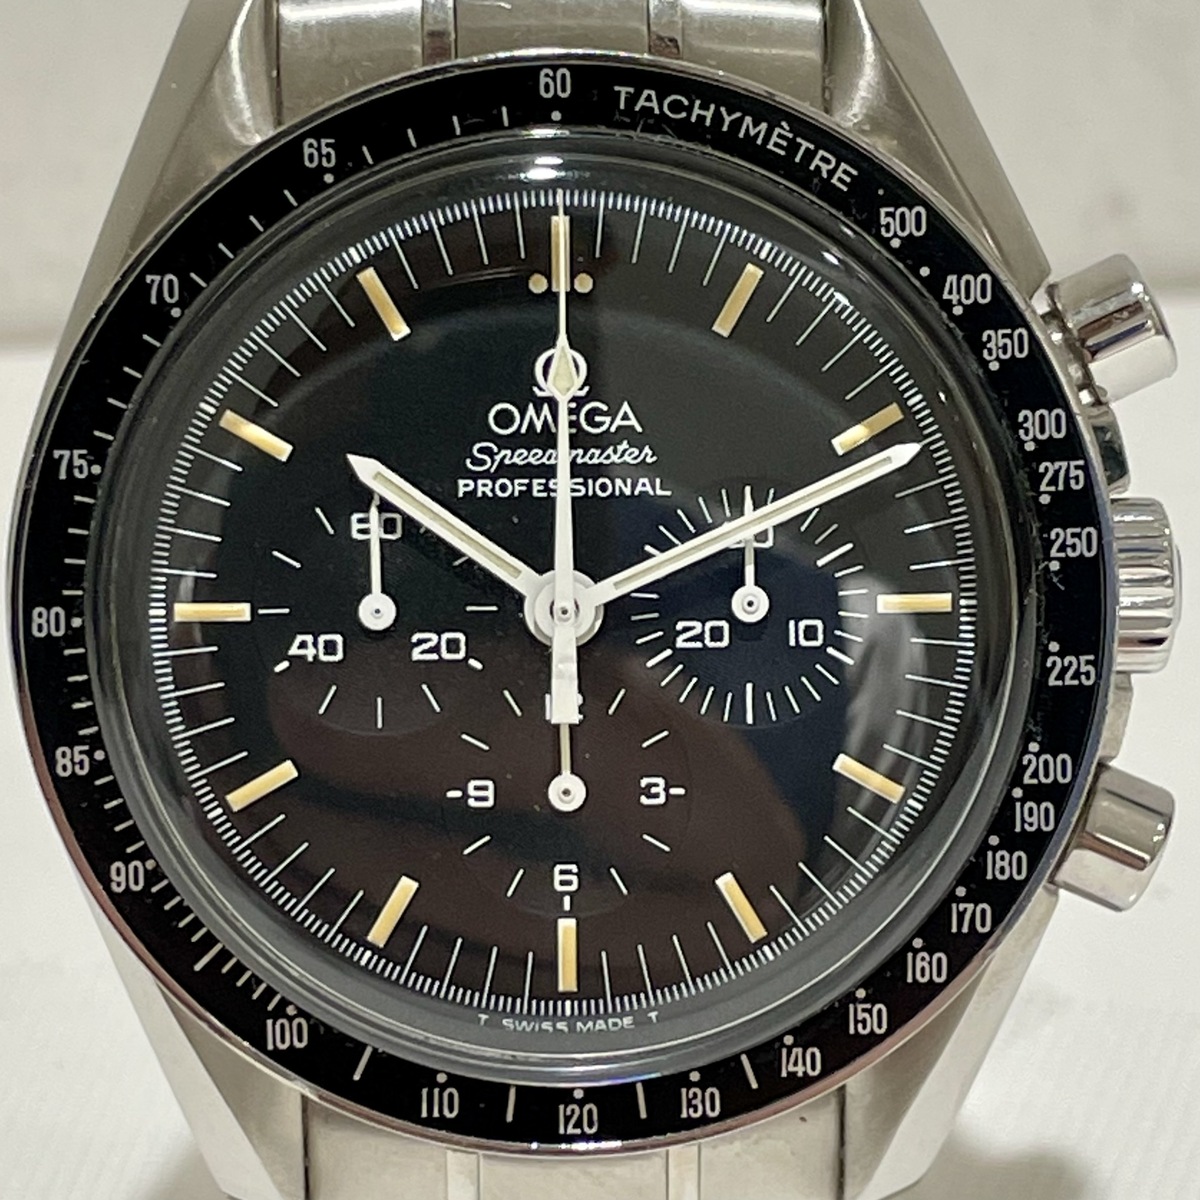 オメガのプロフェッショナル 345.0808 アポロ11号 月面着陸10周年記念モデル 自動巻き時計の買取実績です。